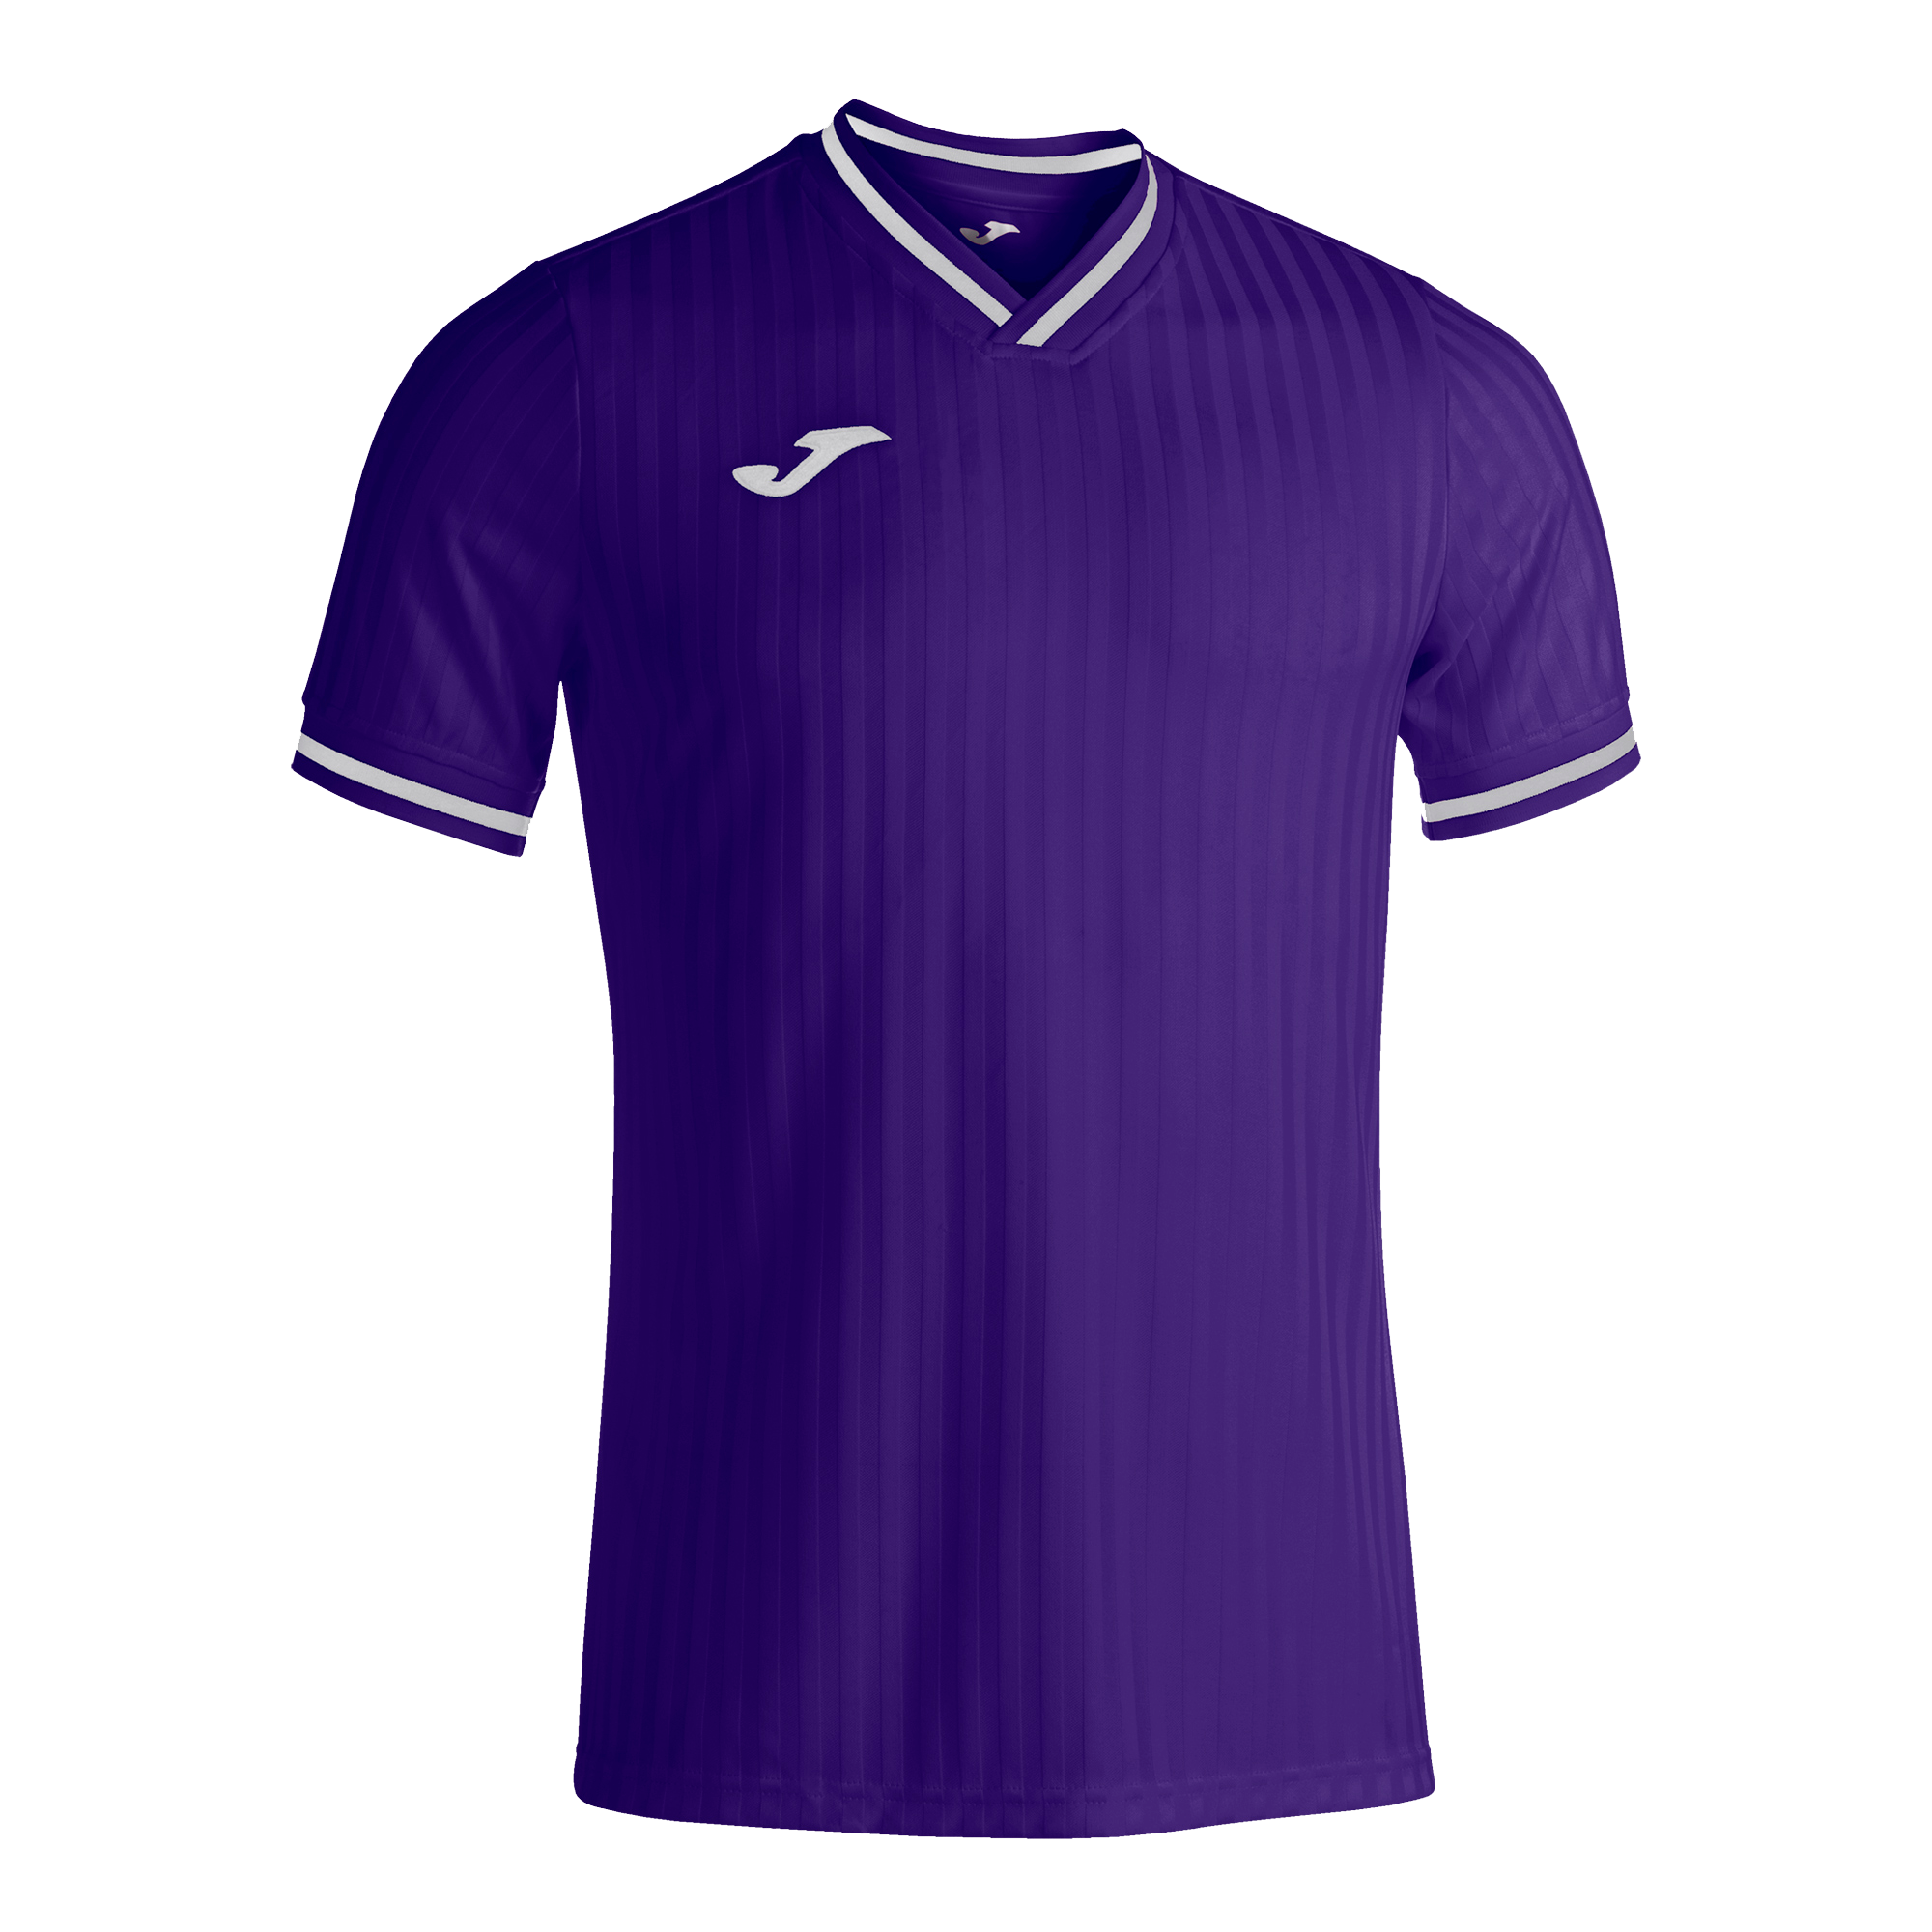 Волейбольная футболка мужская Joma TOLETUM III Фиолетовый